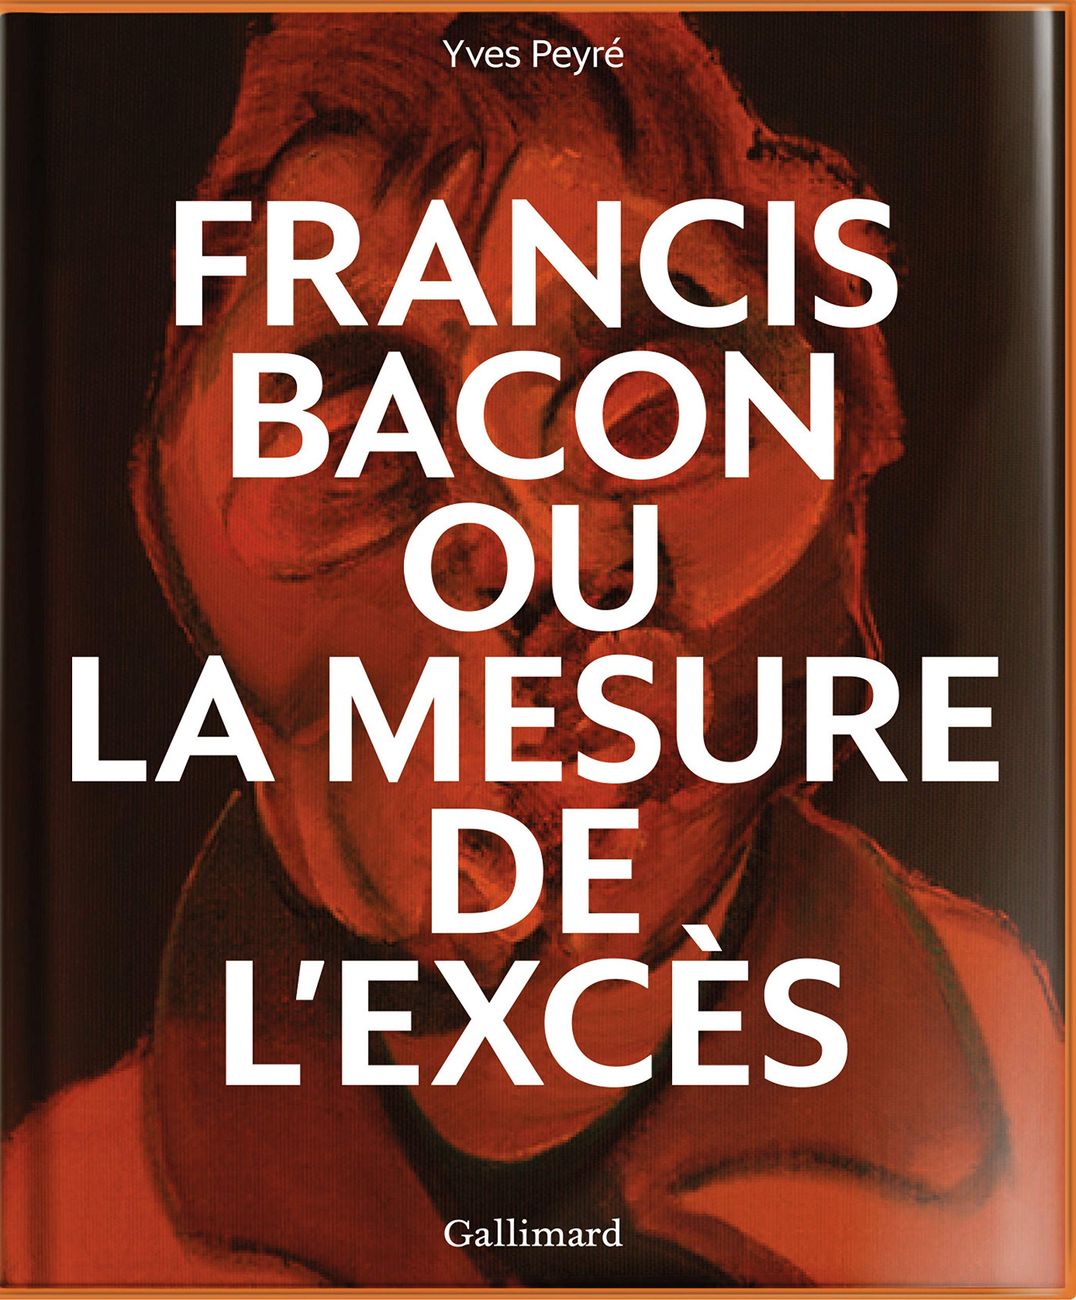 Yves Peyré ‒ Francis Bacon ou la mesure de l'excès (Gallimard, Parigi 2019)